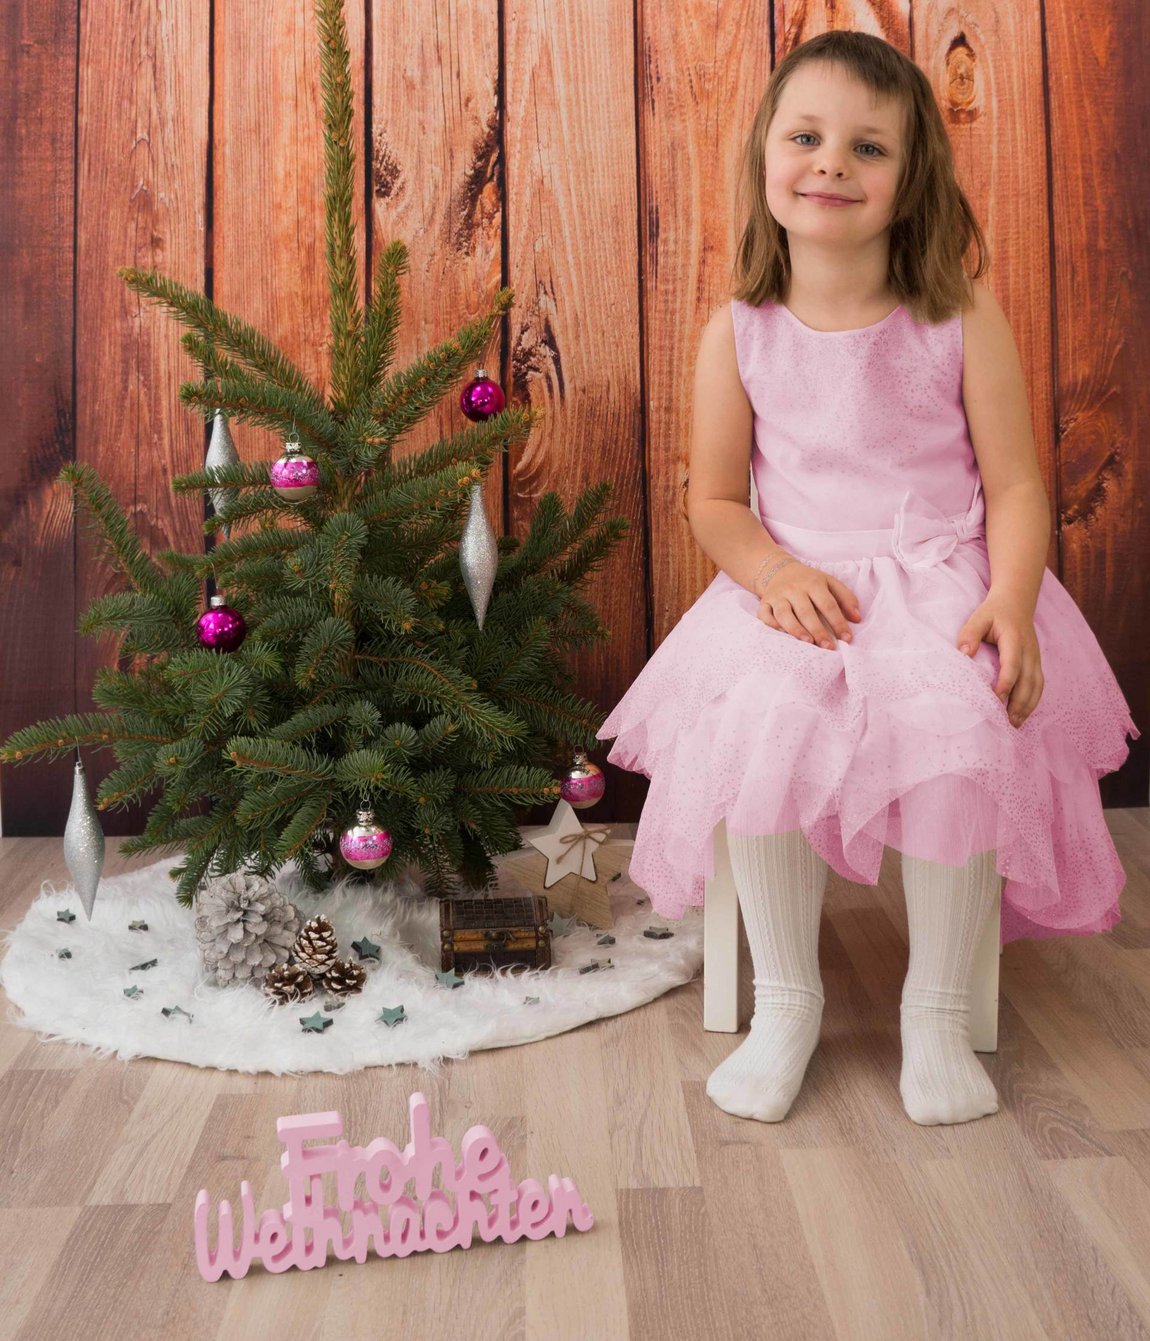 Weihnachten Mädchen Weihnachtsbaum Tanne Baumschmuck Christbaum Kind Kugeln Kleid Hintergrund Holz braun Kleid rosa lachen